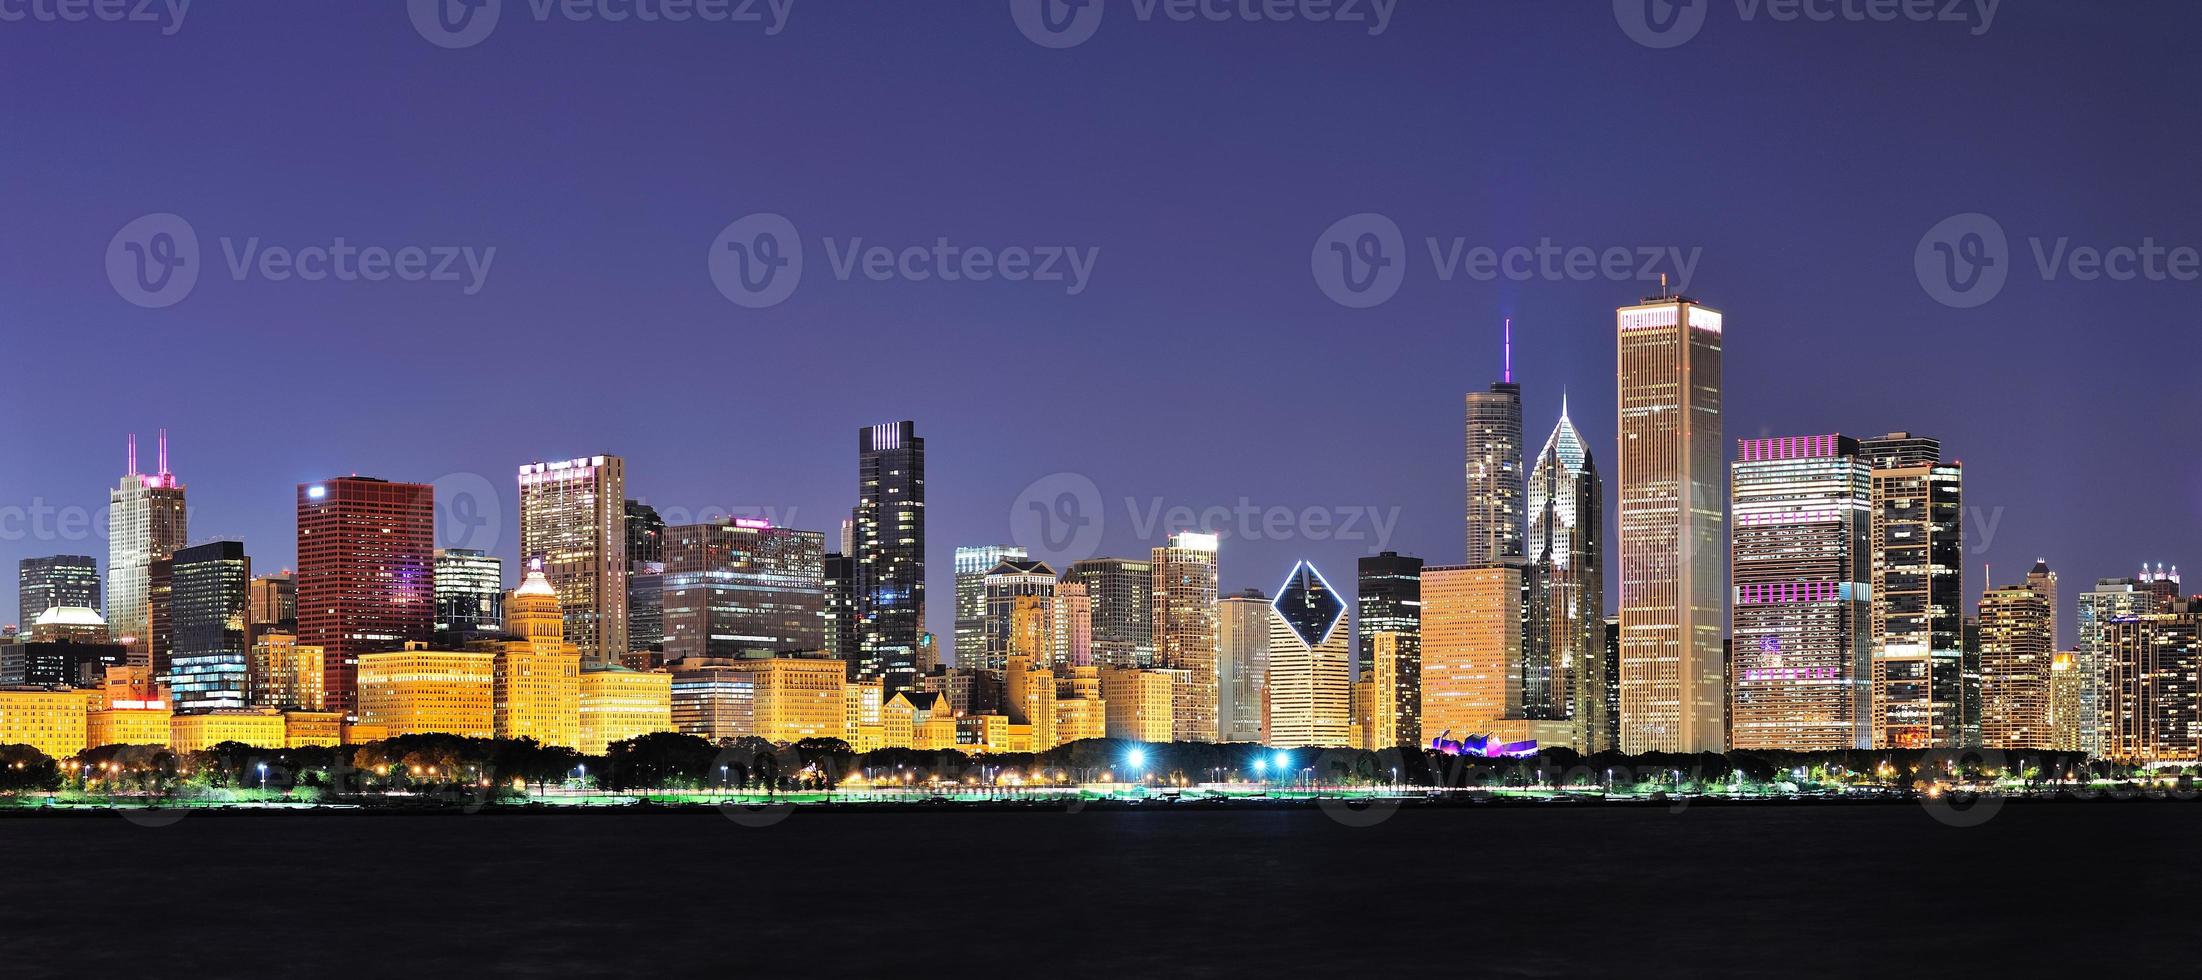 Chicago night panorama photo